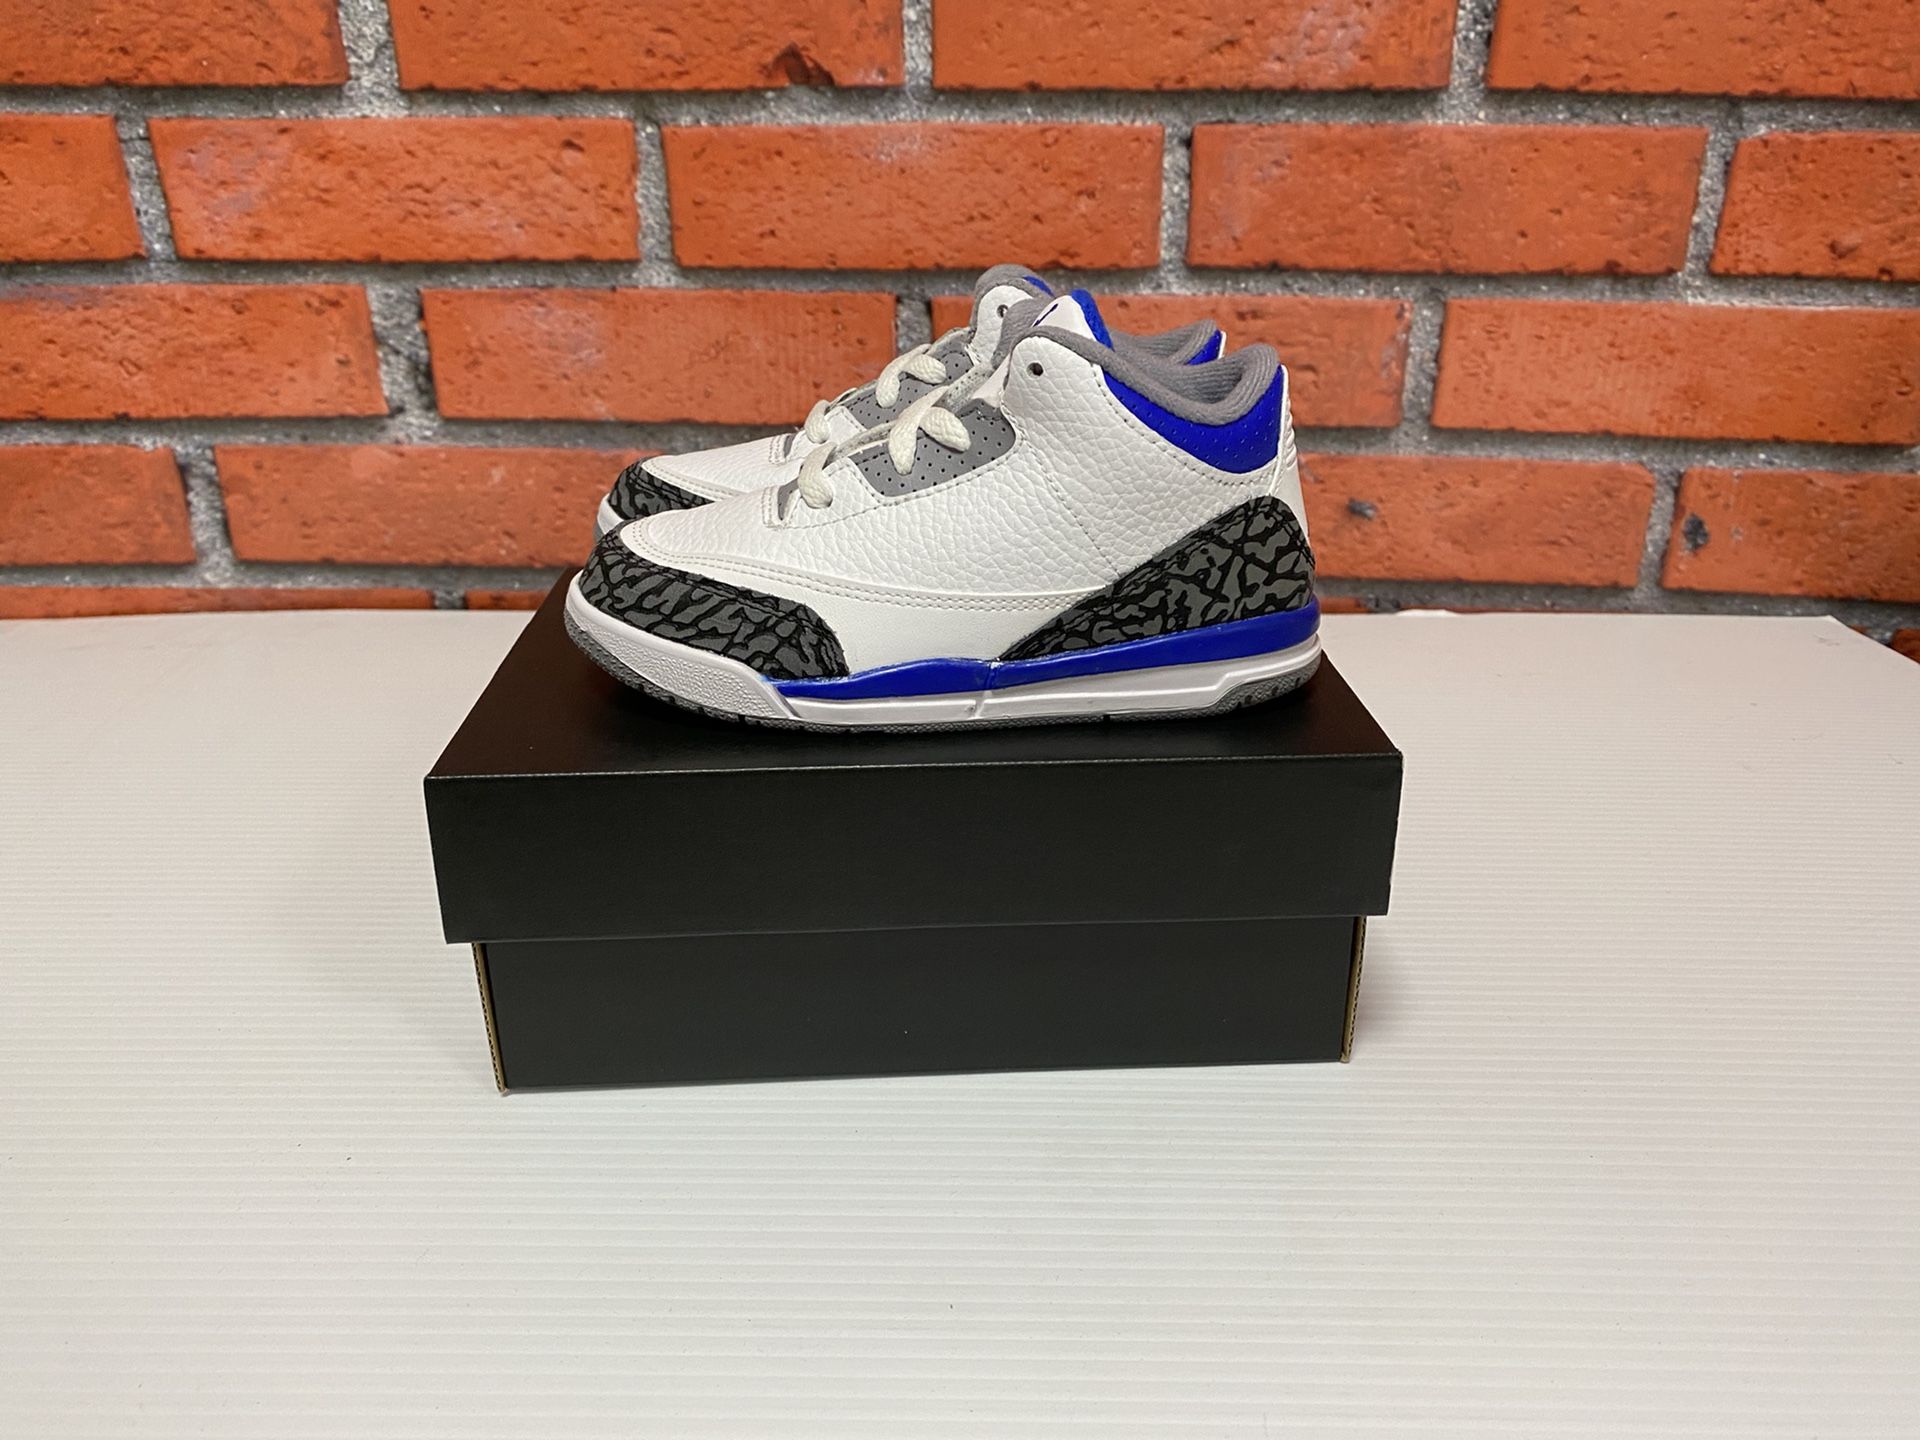 Nike Air Jordan 3 Retro ‘Racer Blue’ Toddler Size 10C